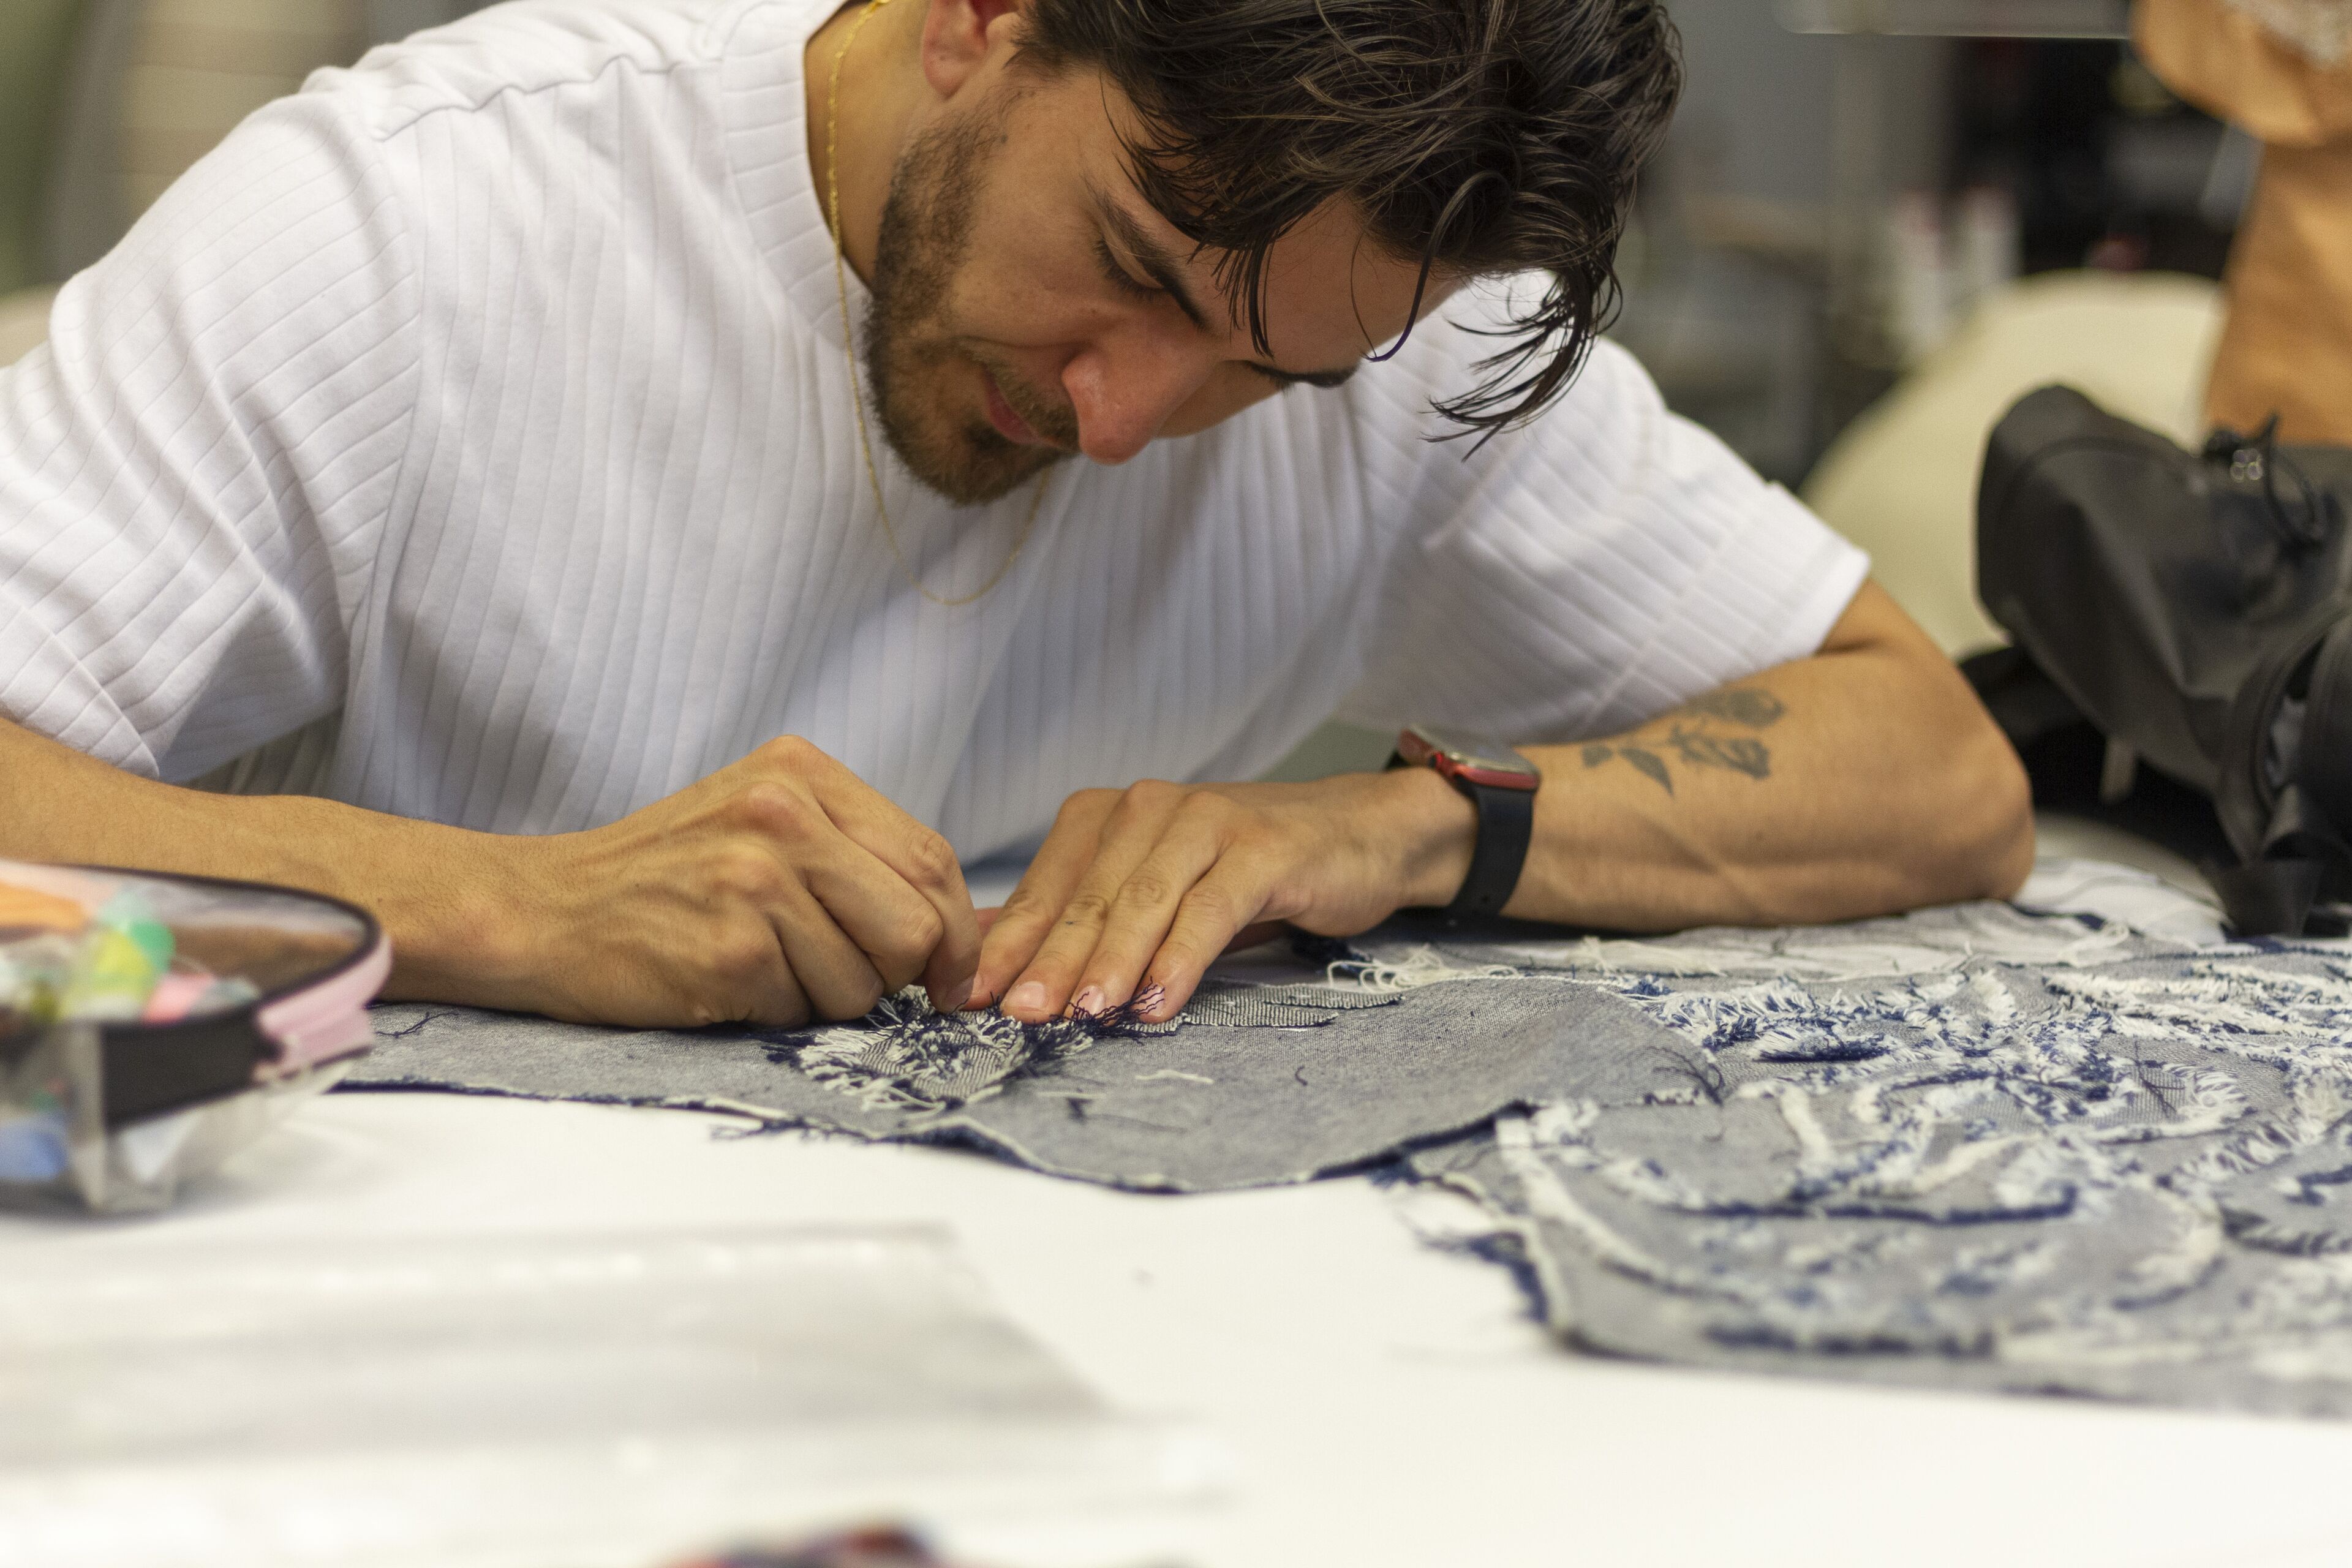 Un artesano meticuloso borda cuidadosamente un patrón en un trozo de tela, enfocado en la tarea delicada.